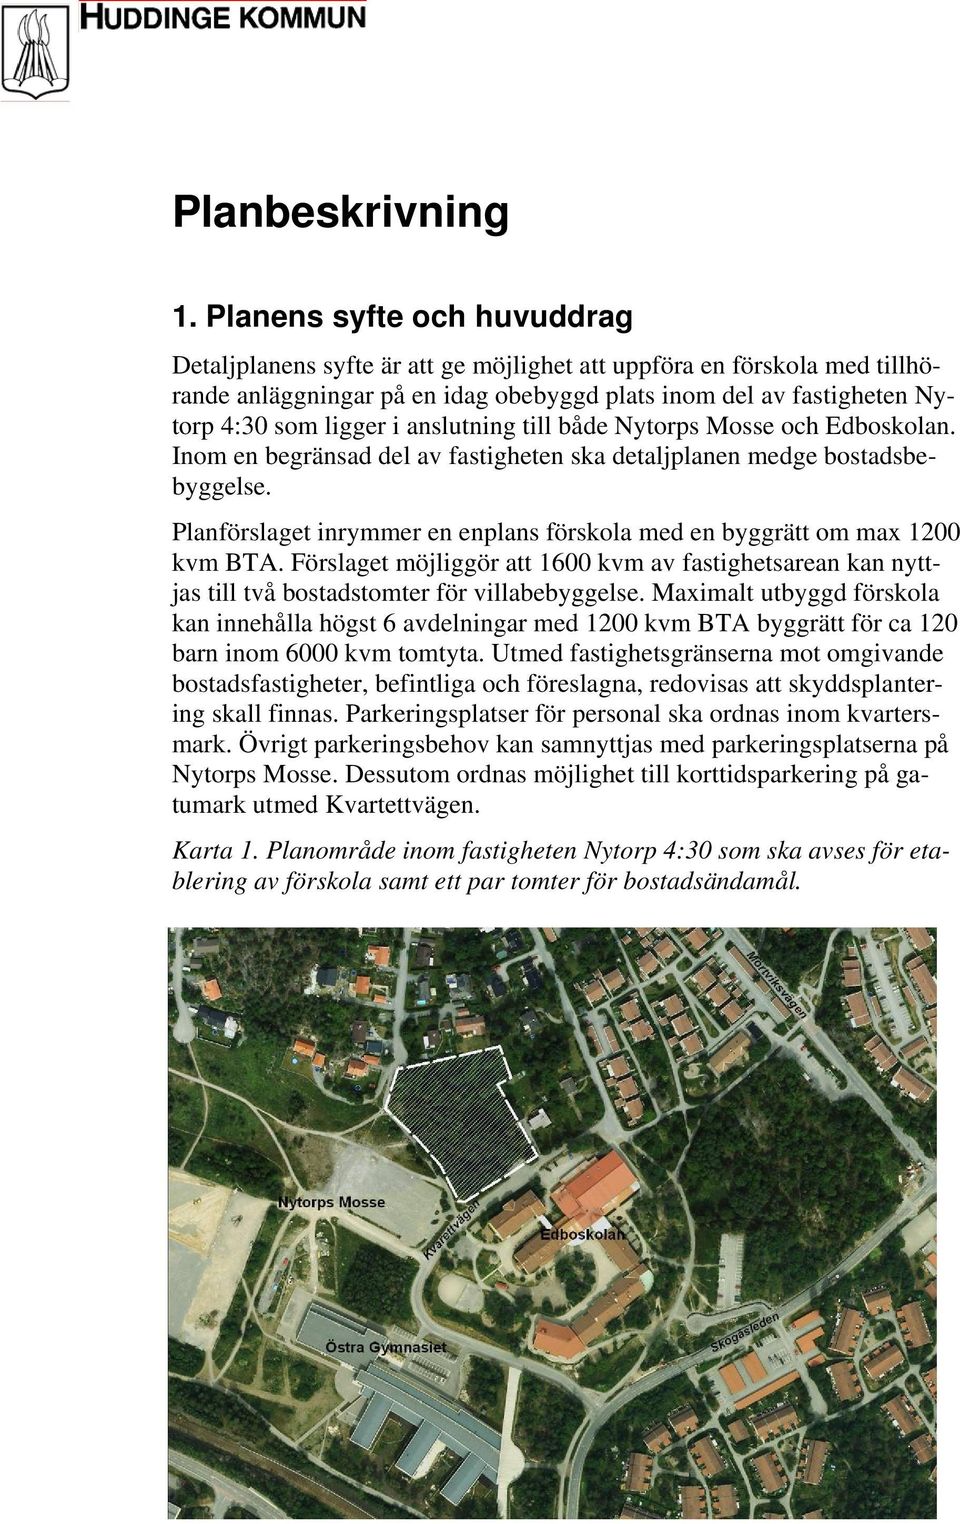 anslutning till både Nytorps Mosse och Edboskolan. Inom en begränsad del av fastigheten ska detaljplanen medge bostadsbebyggelse.